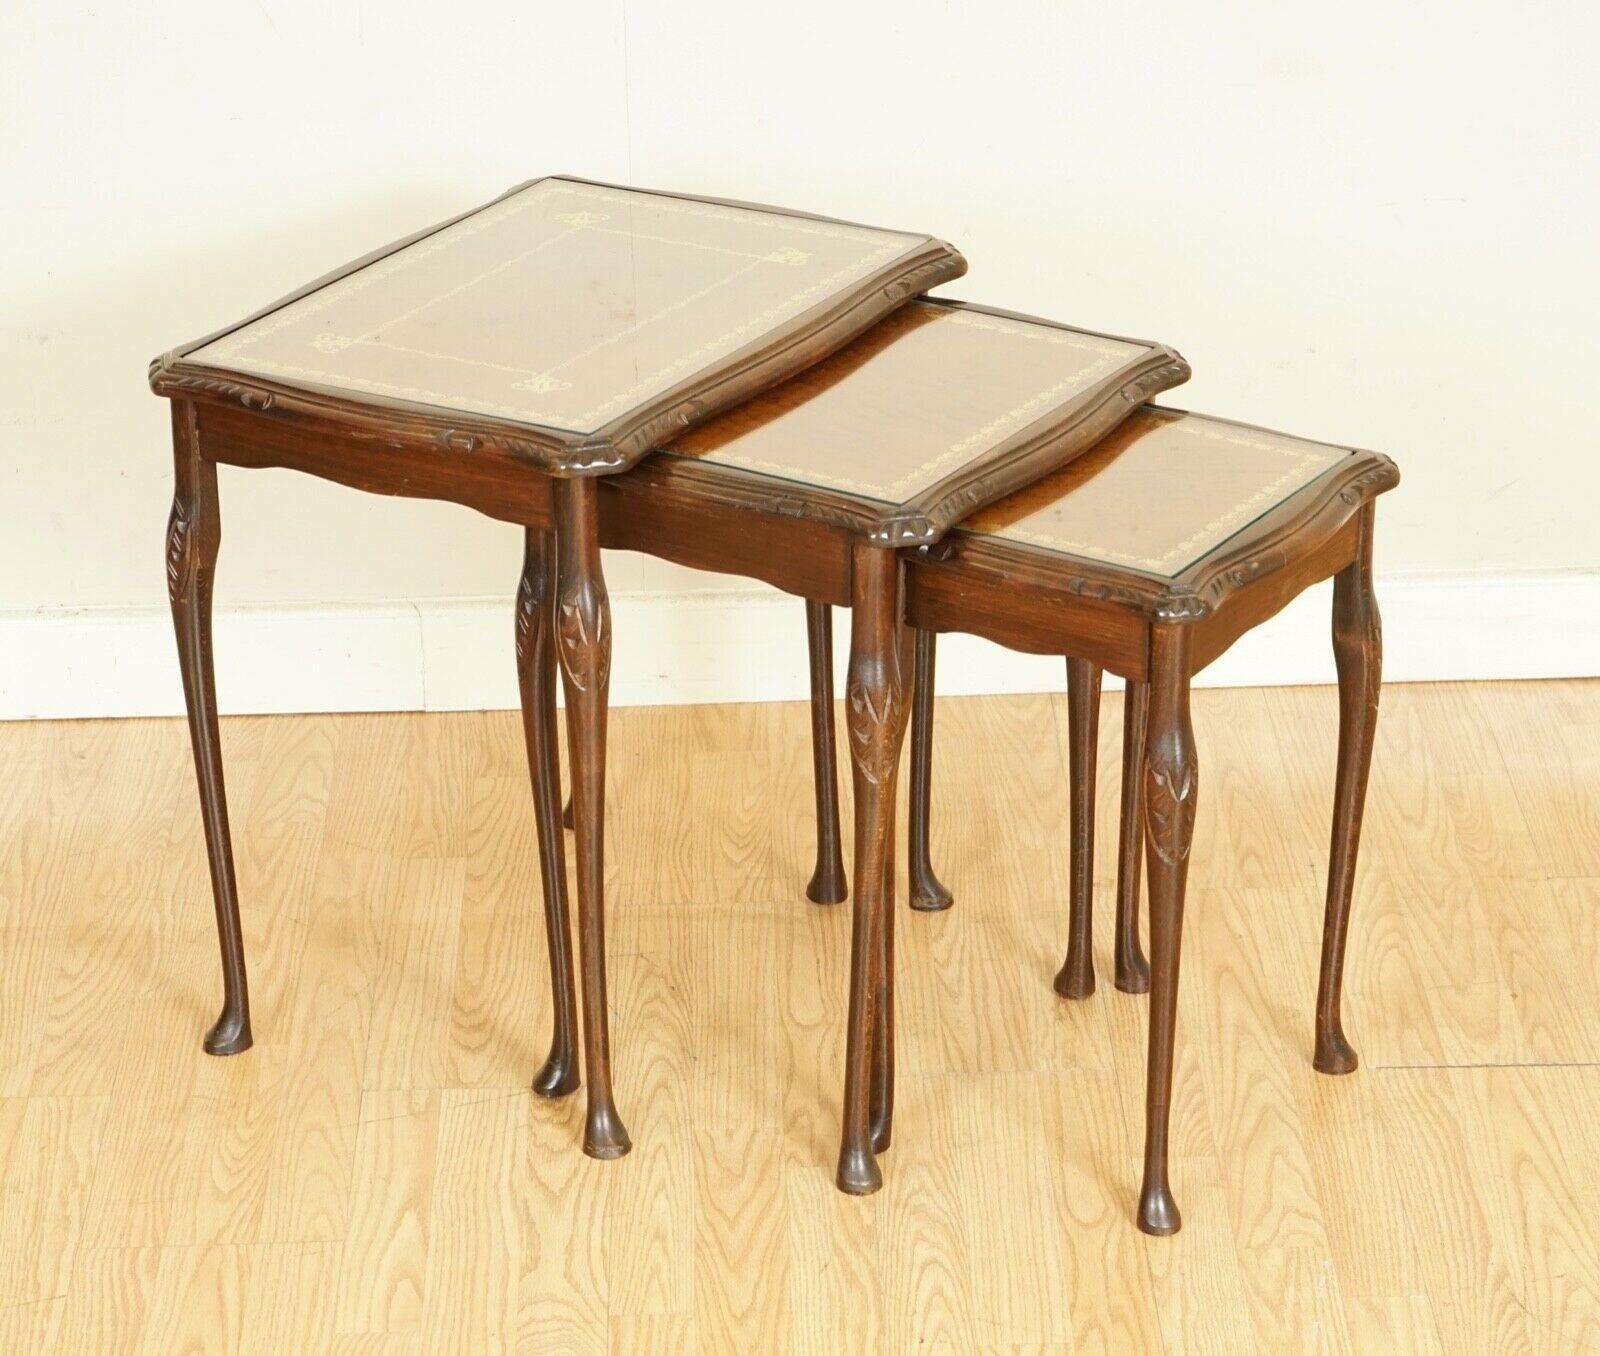 Wir freuen uns, Ihnen dieses außergewöhnliche Tischnest mit braunem Leder präsentieren zu können.

Alle Tische haben eine Glasplatte, um das Leder zu schützen. 

Wir haben ihn leicht restauriert, indem wir ihn von Hand gereinigt, von Hand